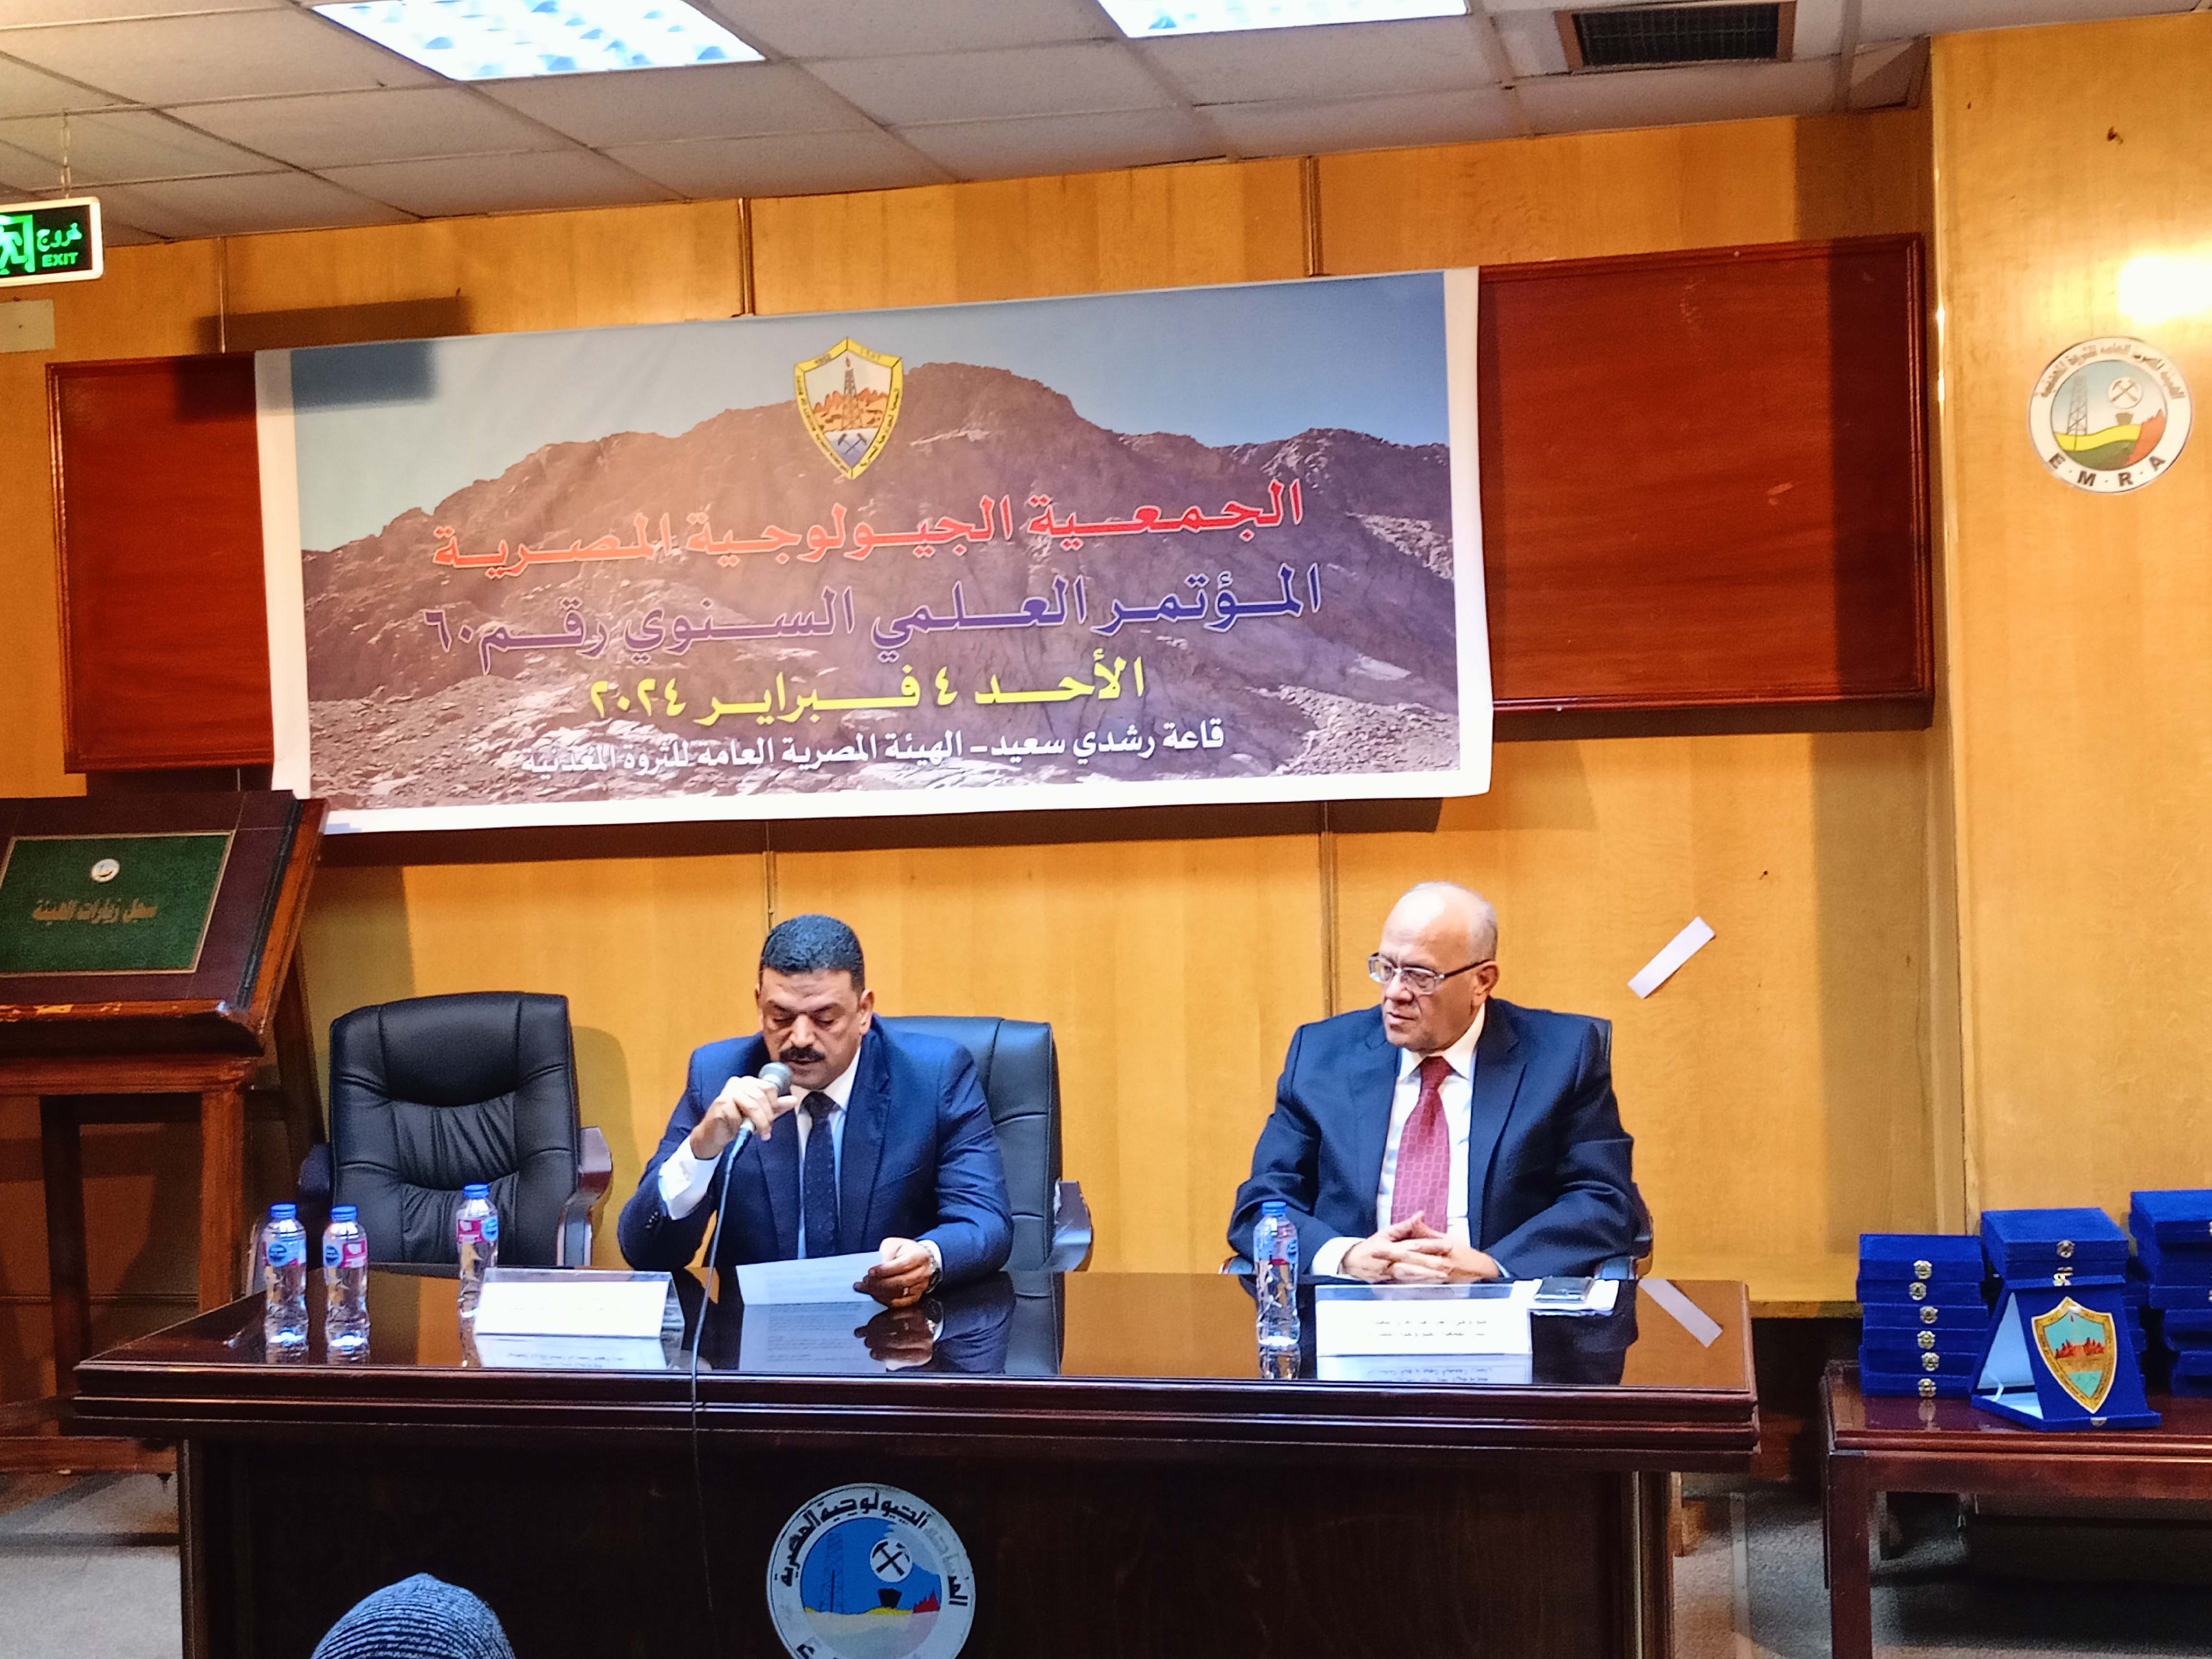 الهيئة تستضيف المؤتمر العلمي الستون للجمعية الجيولوجية المصرية